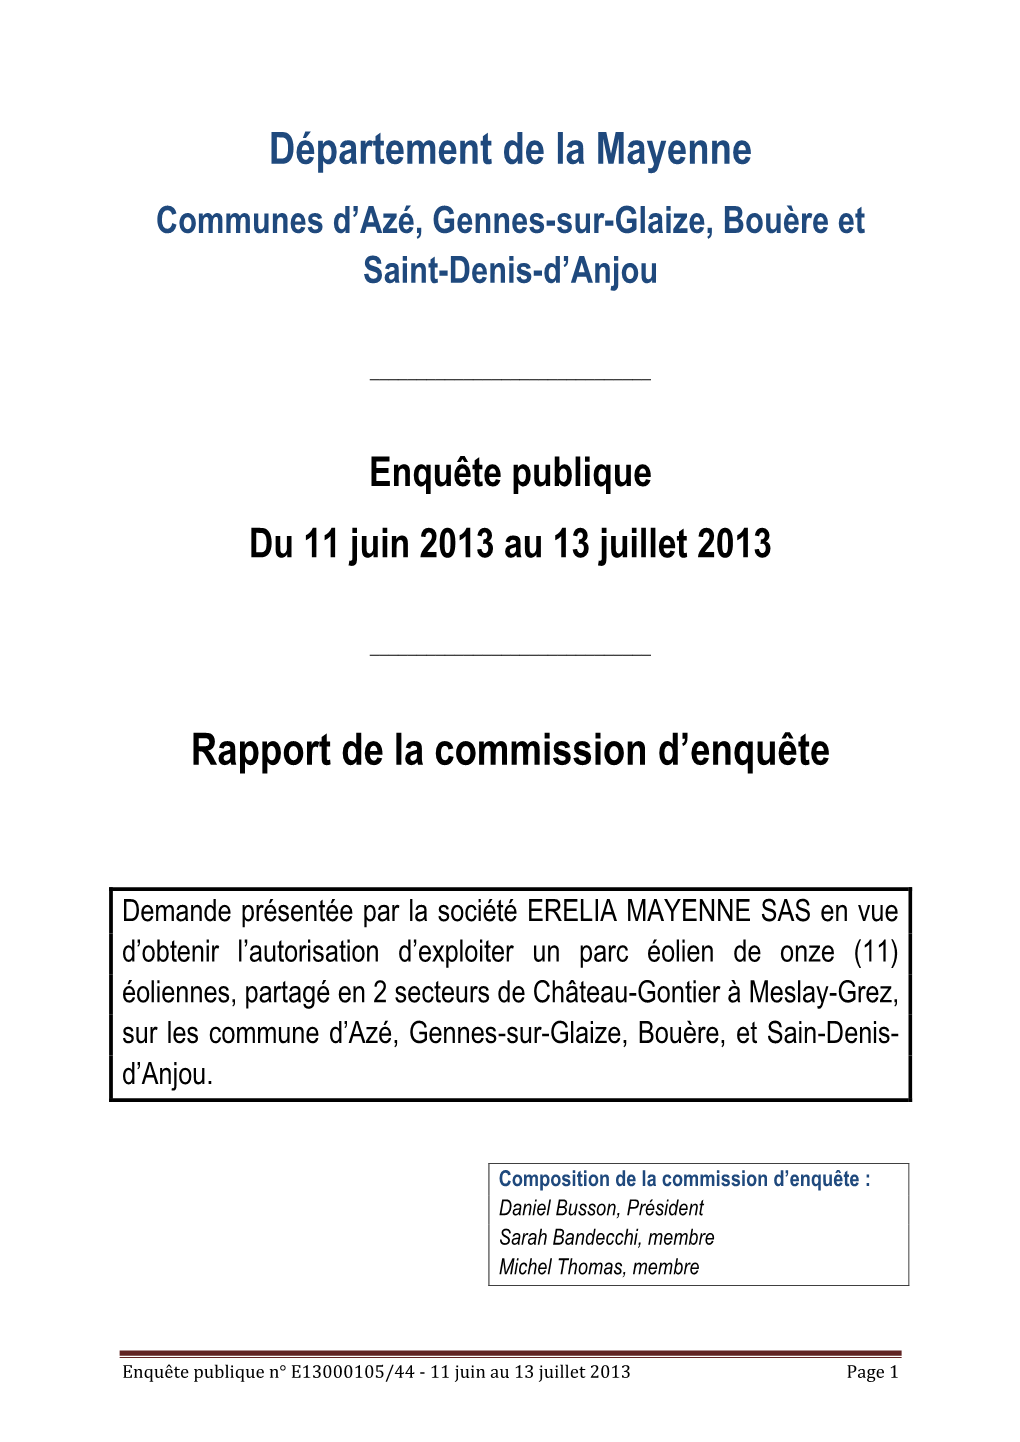 Département De La Mayenne Rapport De La Commission D'enquête